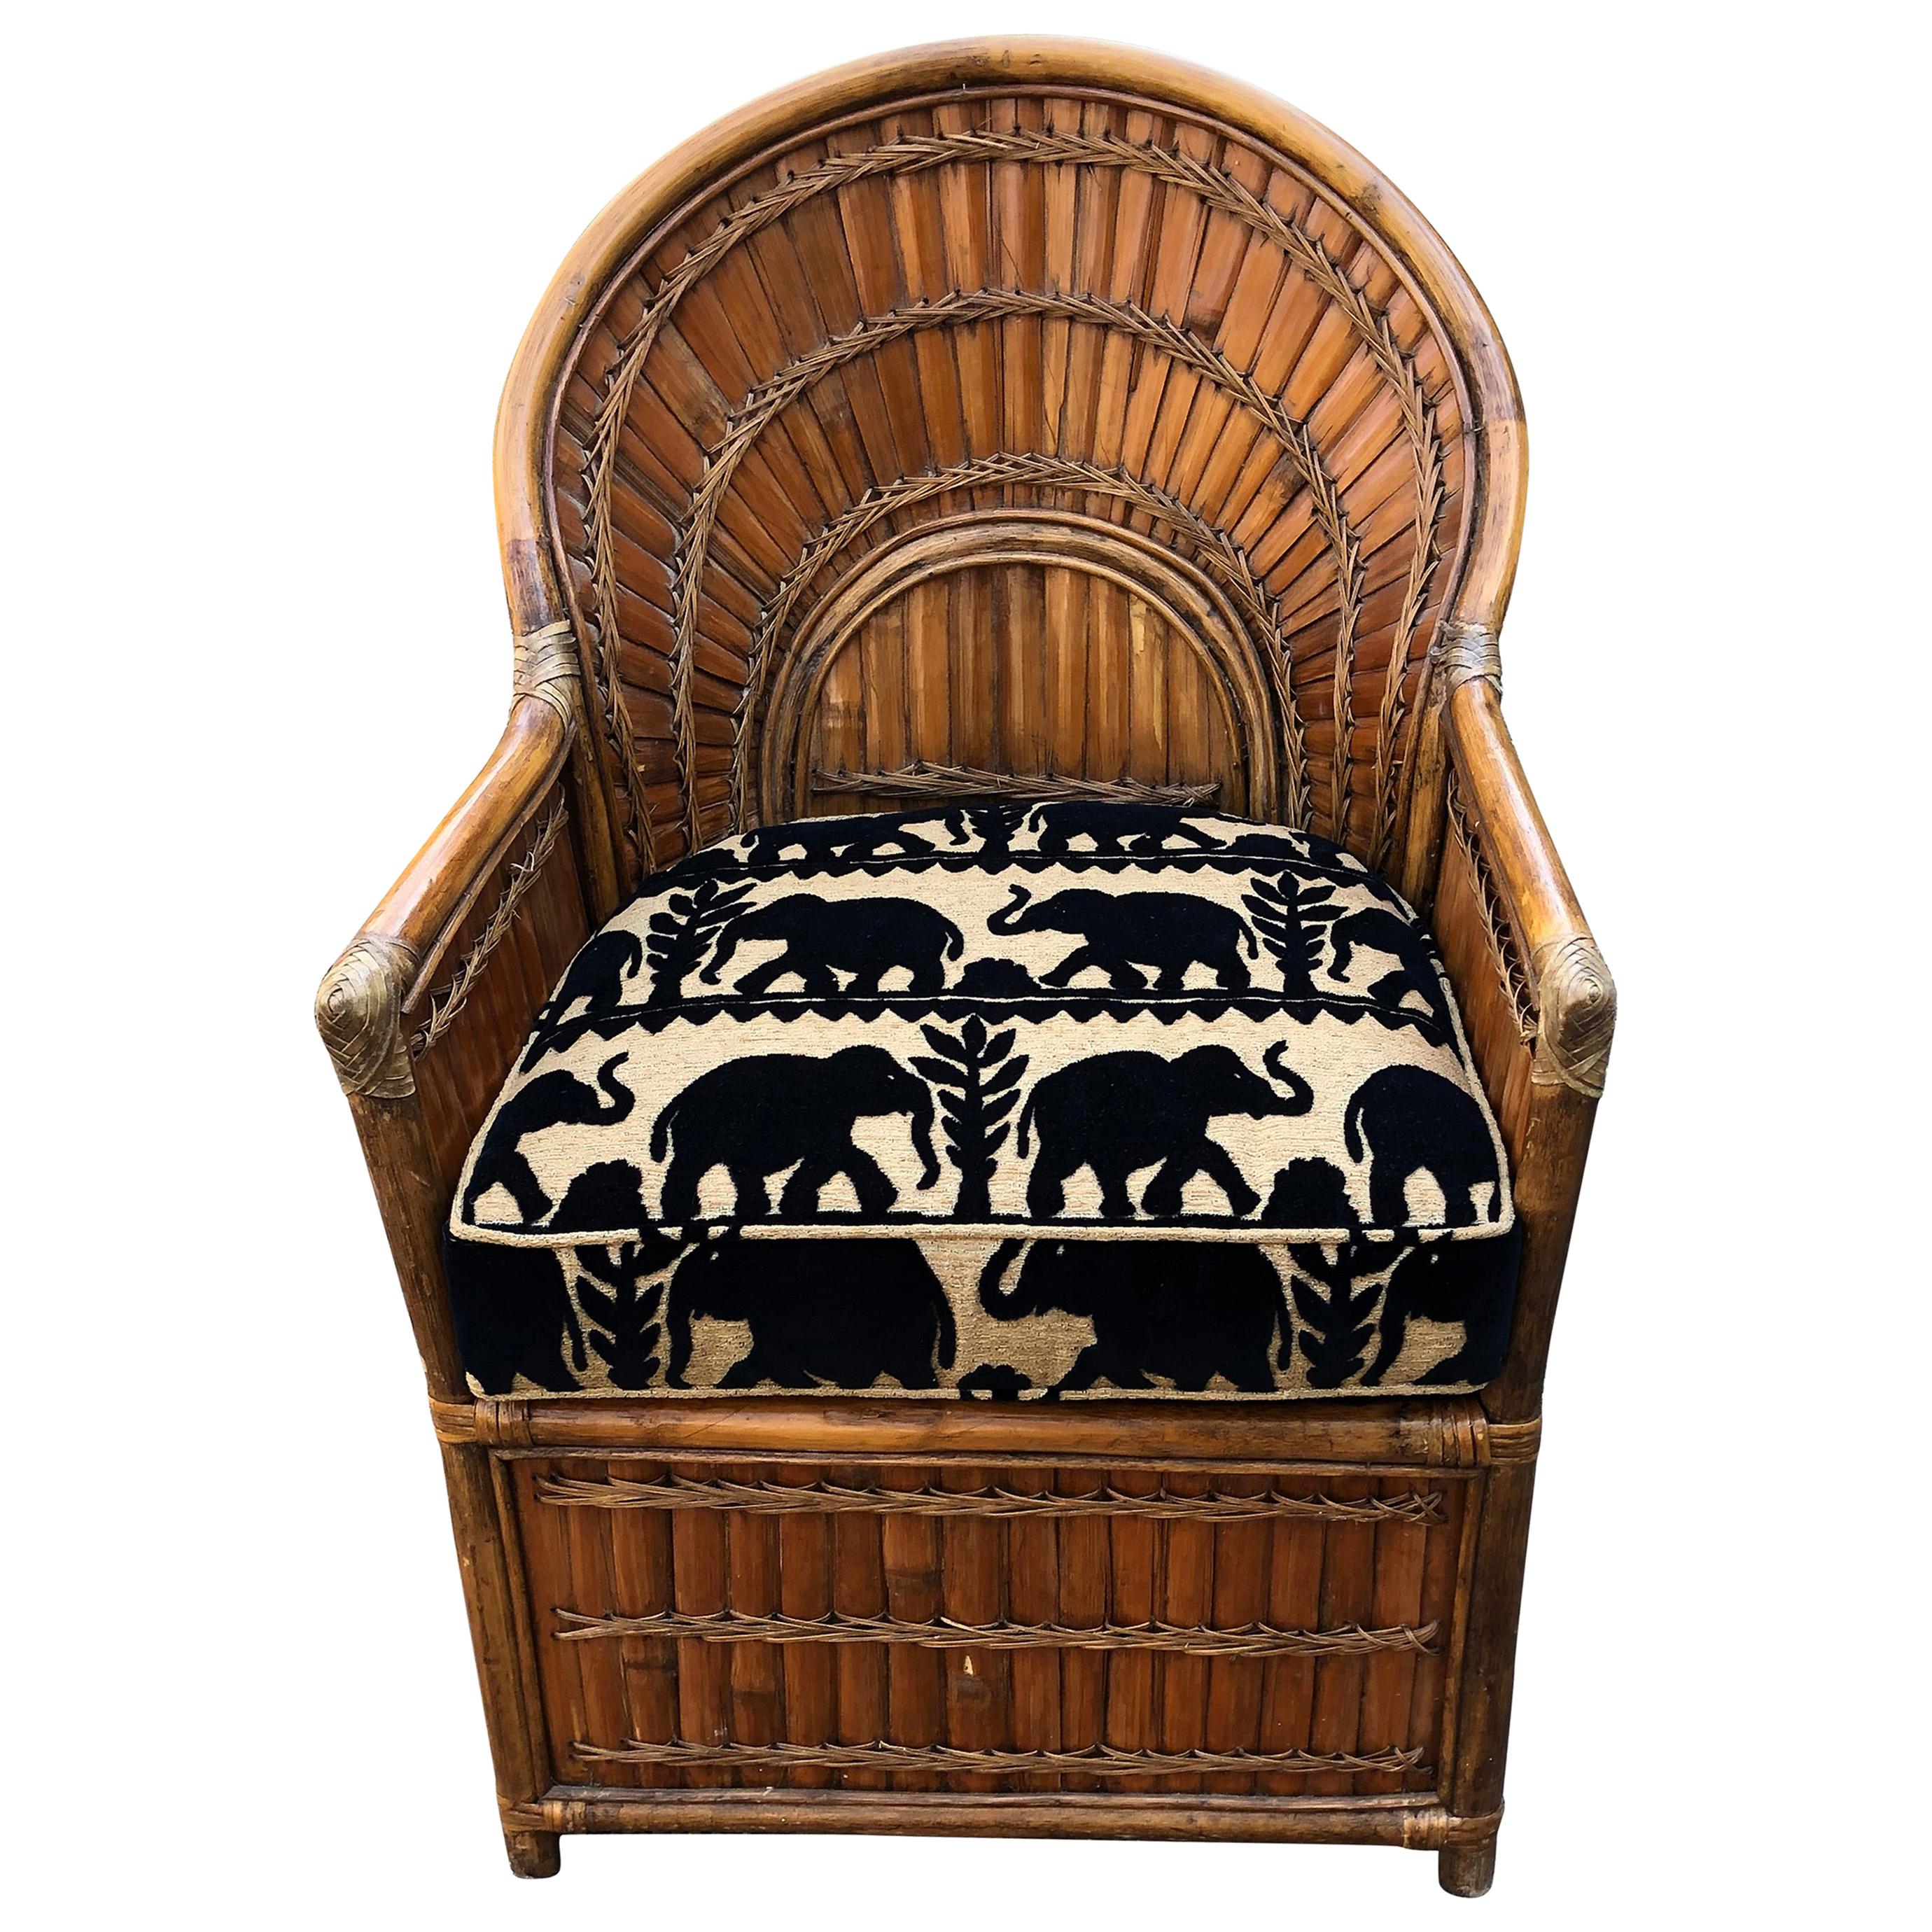 Fabulous Vintage Rattan Armchair with custom Elephant Cushion